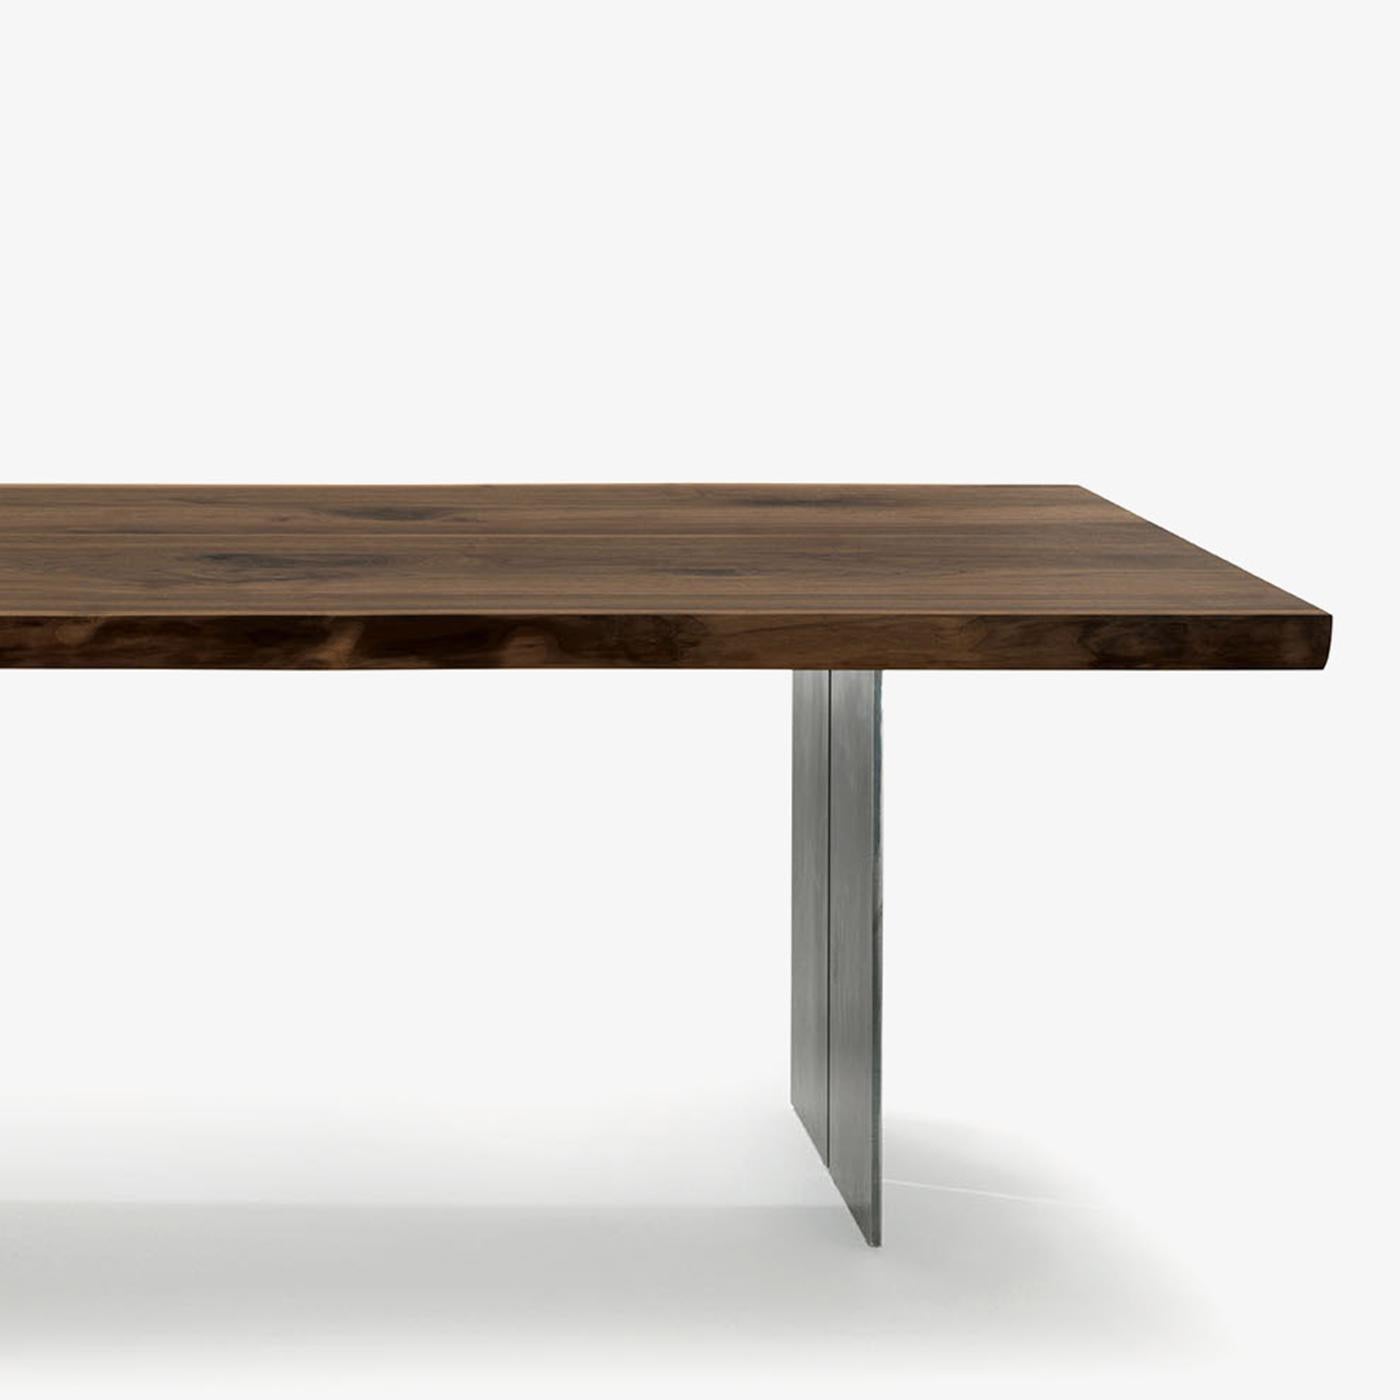 Tisch Echte Kanten und Stahl mit massiver Nussbaumplatte, 6,5 mm Stärke 
und mit Echtholzlattenkanten. Mit 2 Stahlfüßen, die beide getrennt sind
füße aus Stahl in geölter Ausführung. Das Holz ist mit natürlichem Kiefernwachs behandelt.
Erhältlich